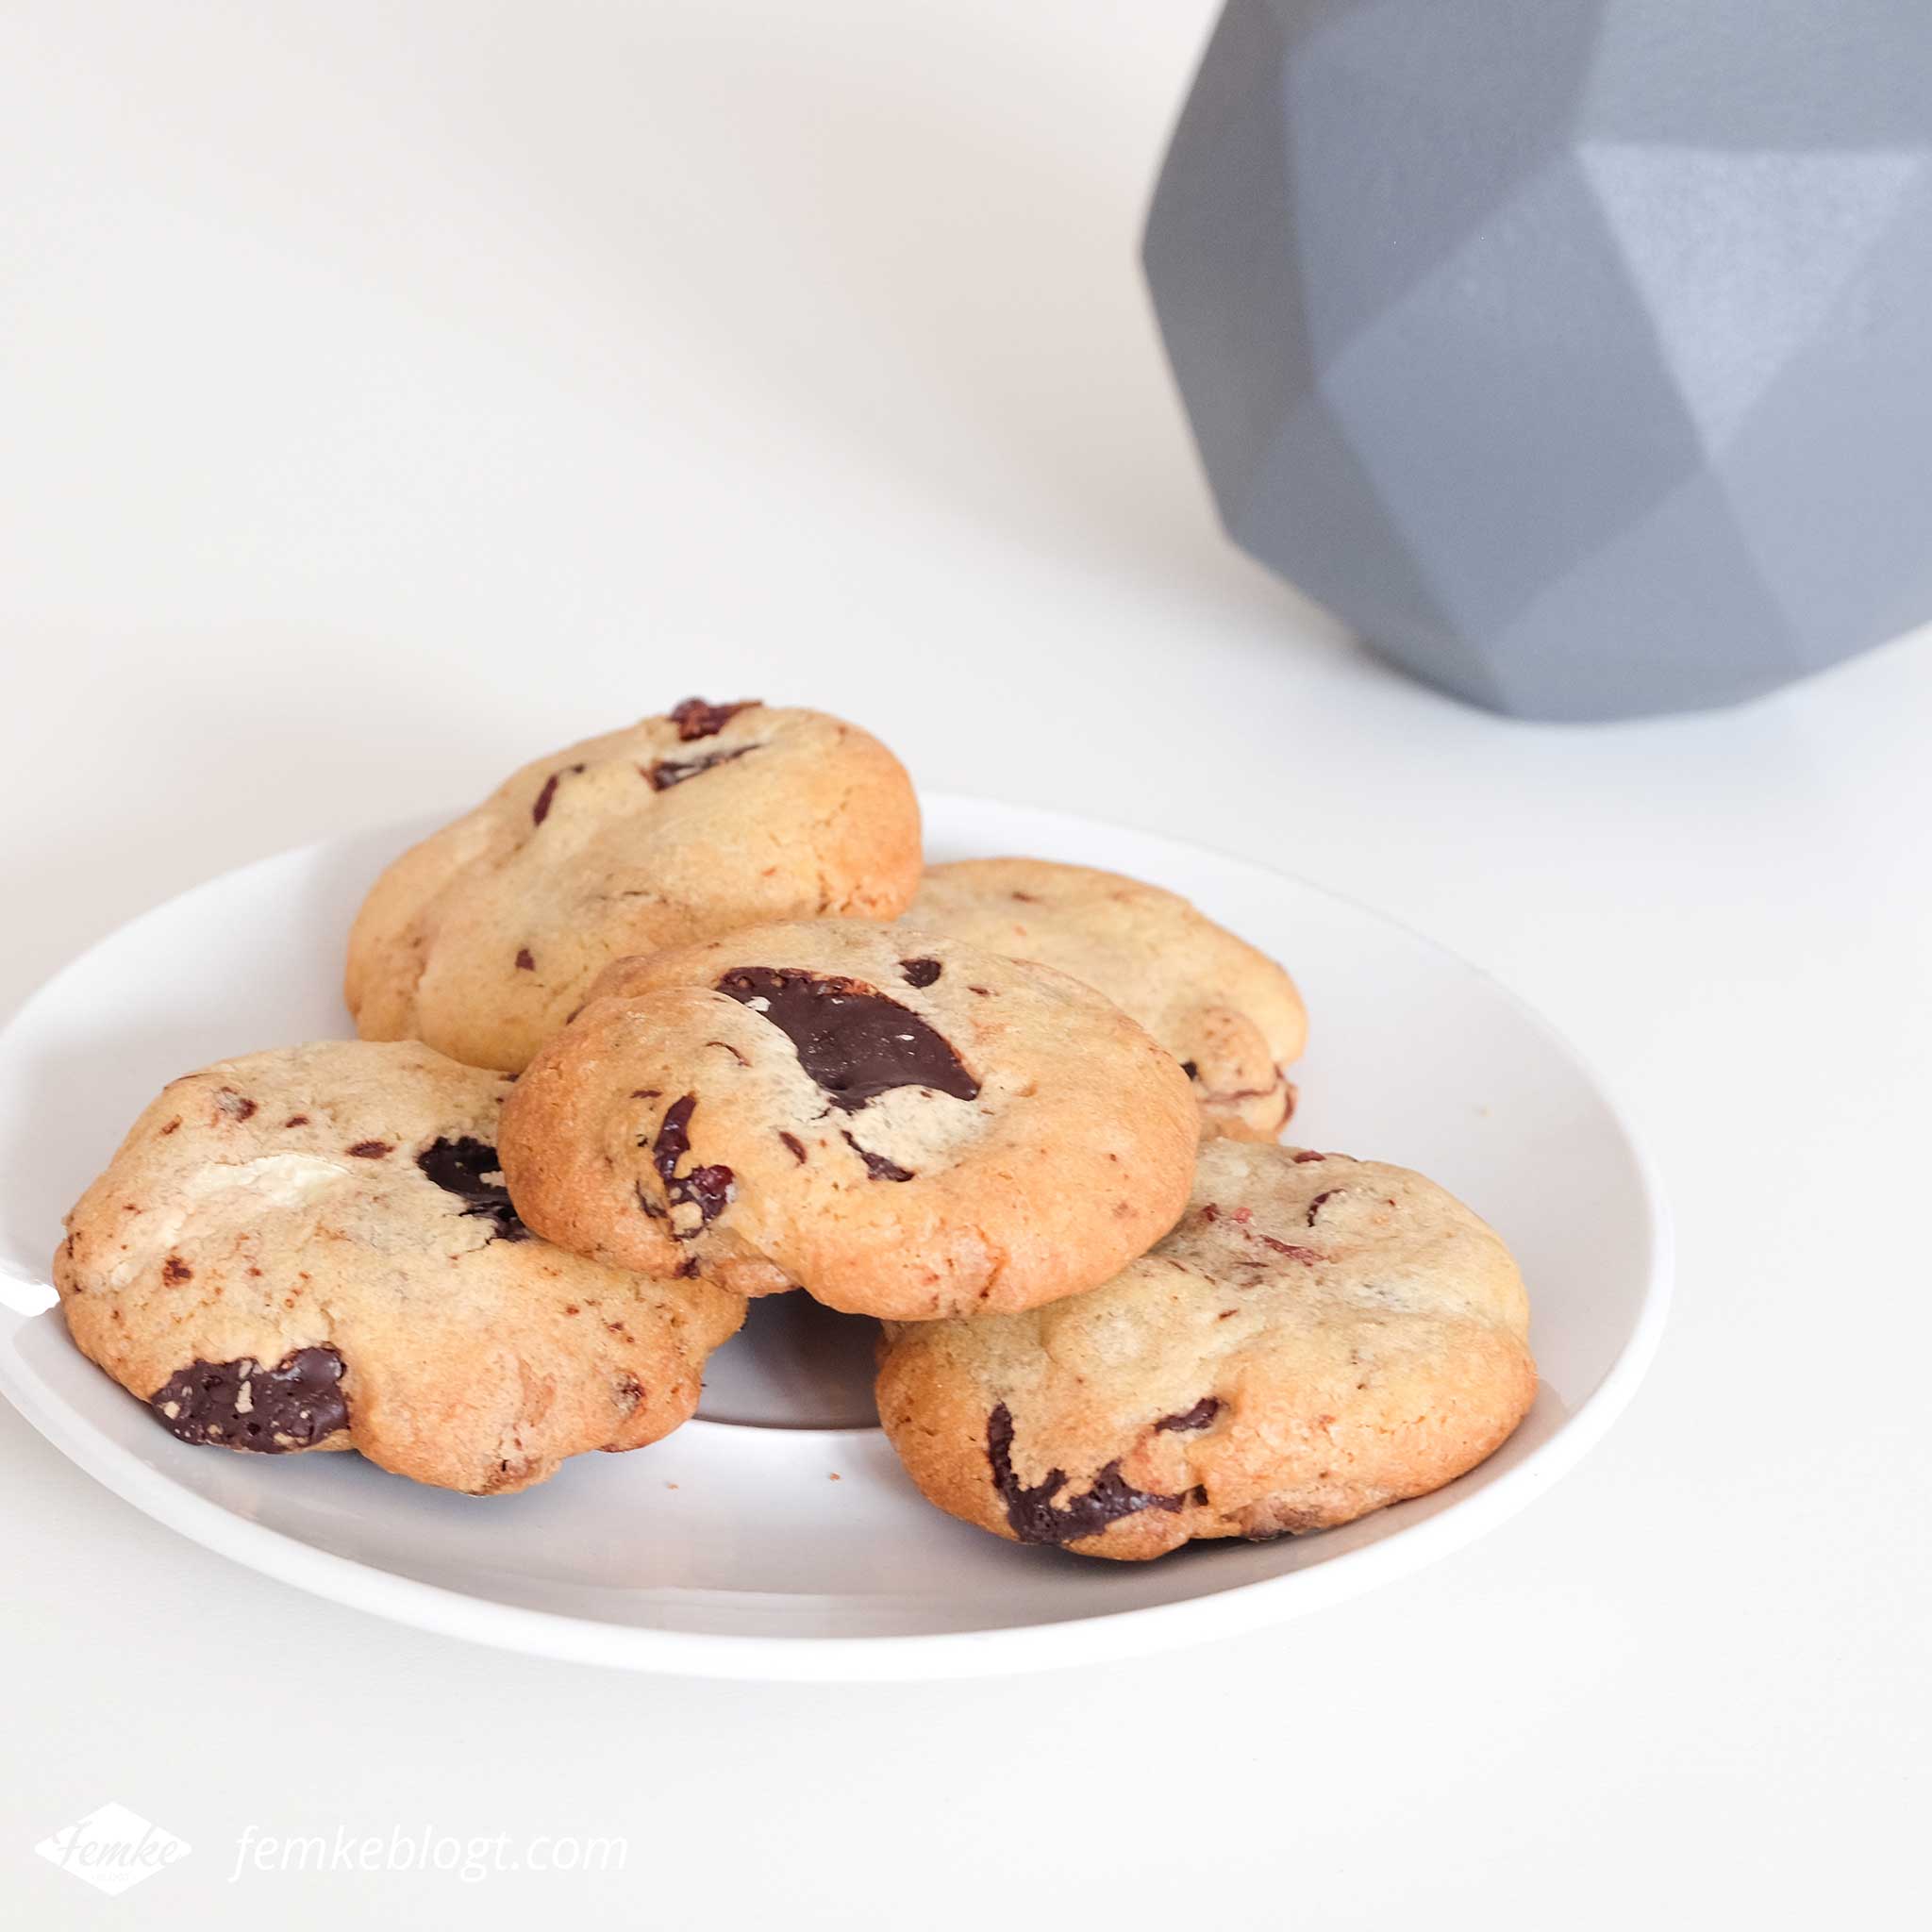 Maandoverzicht maart | Cranberry chocolate chip cookies